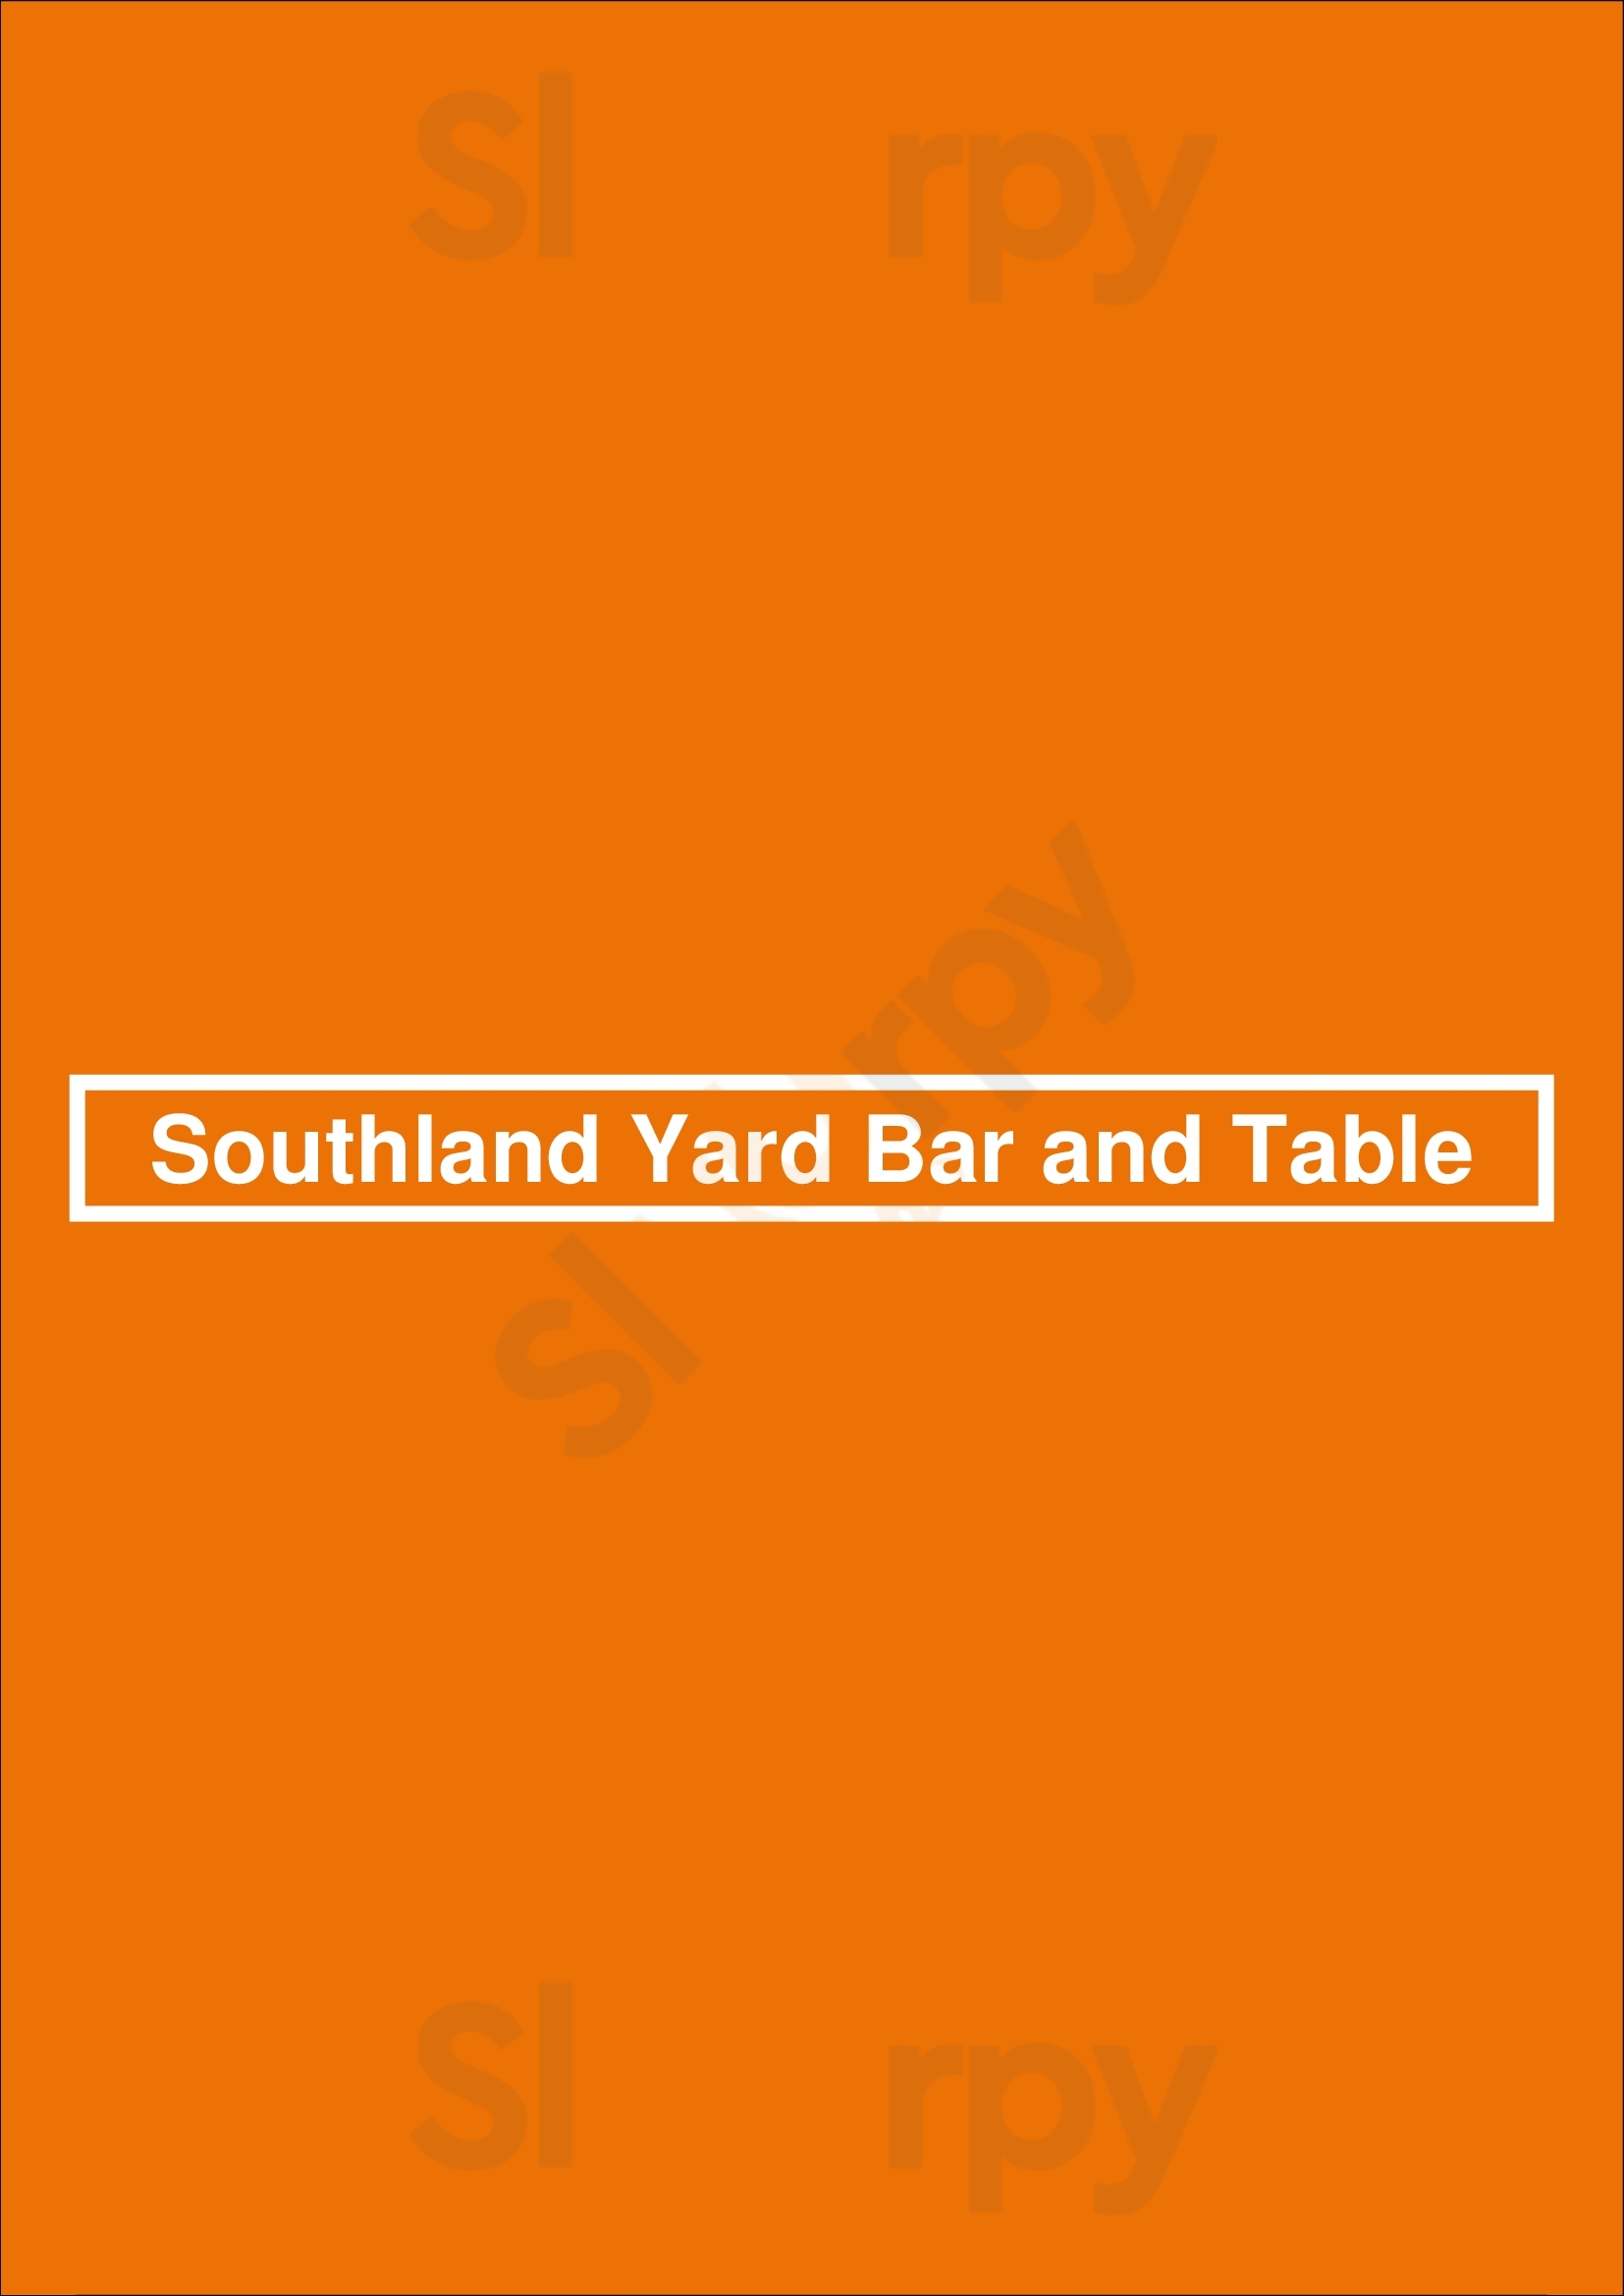 Southland Yard Bar And Table Calgary Menu - 1